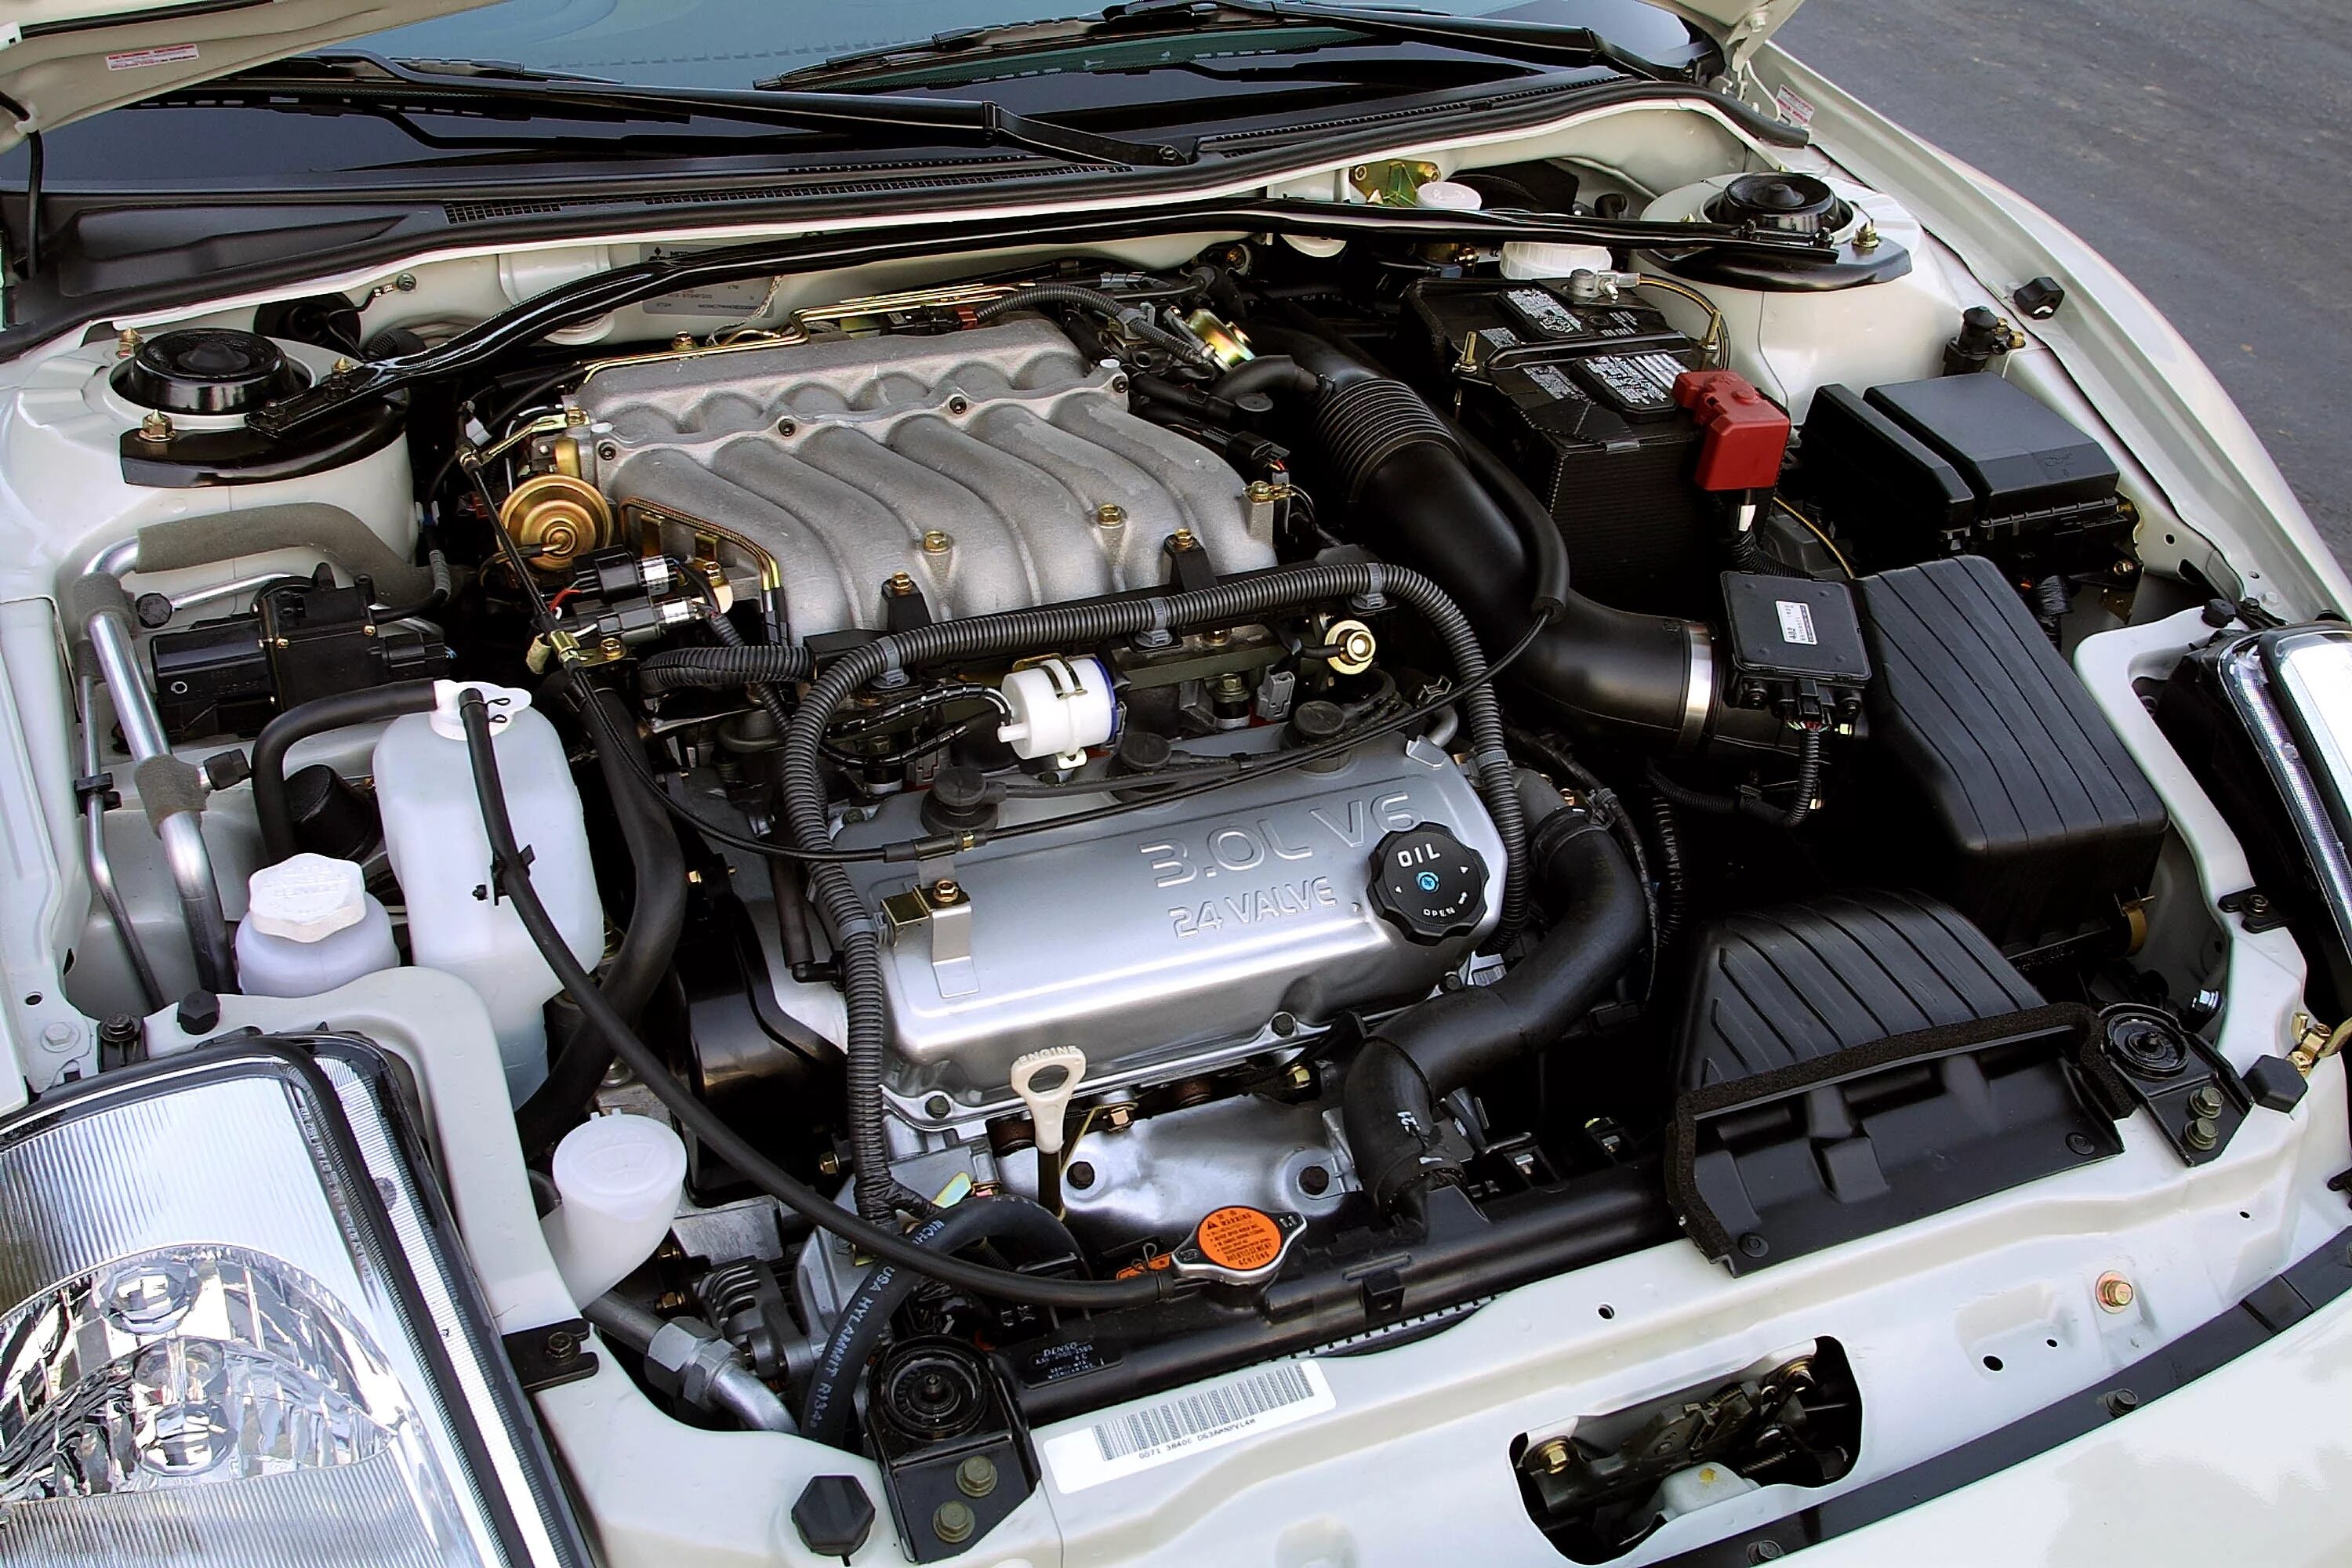 Митсубиси Эклипс 2 двигатель. Mitsubishi Eclipse 3g 3.0 двигатель. Двигатель Митсубиси Эклипс 2.4. Mitsubishi Eclipse v6 мотор. 3.3 v6